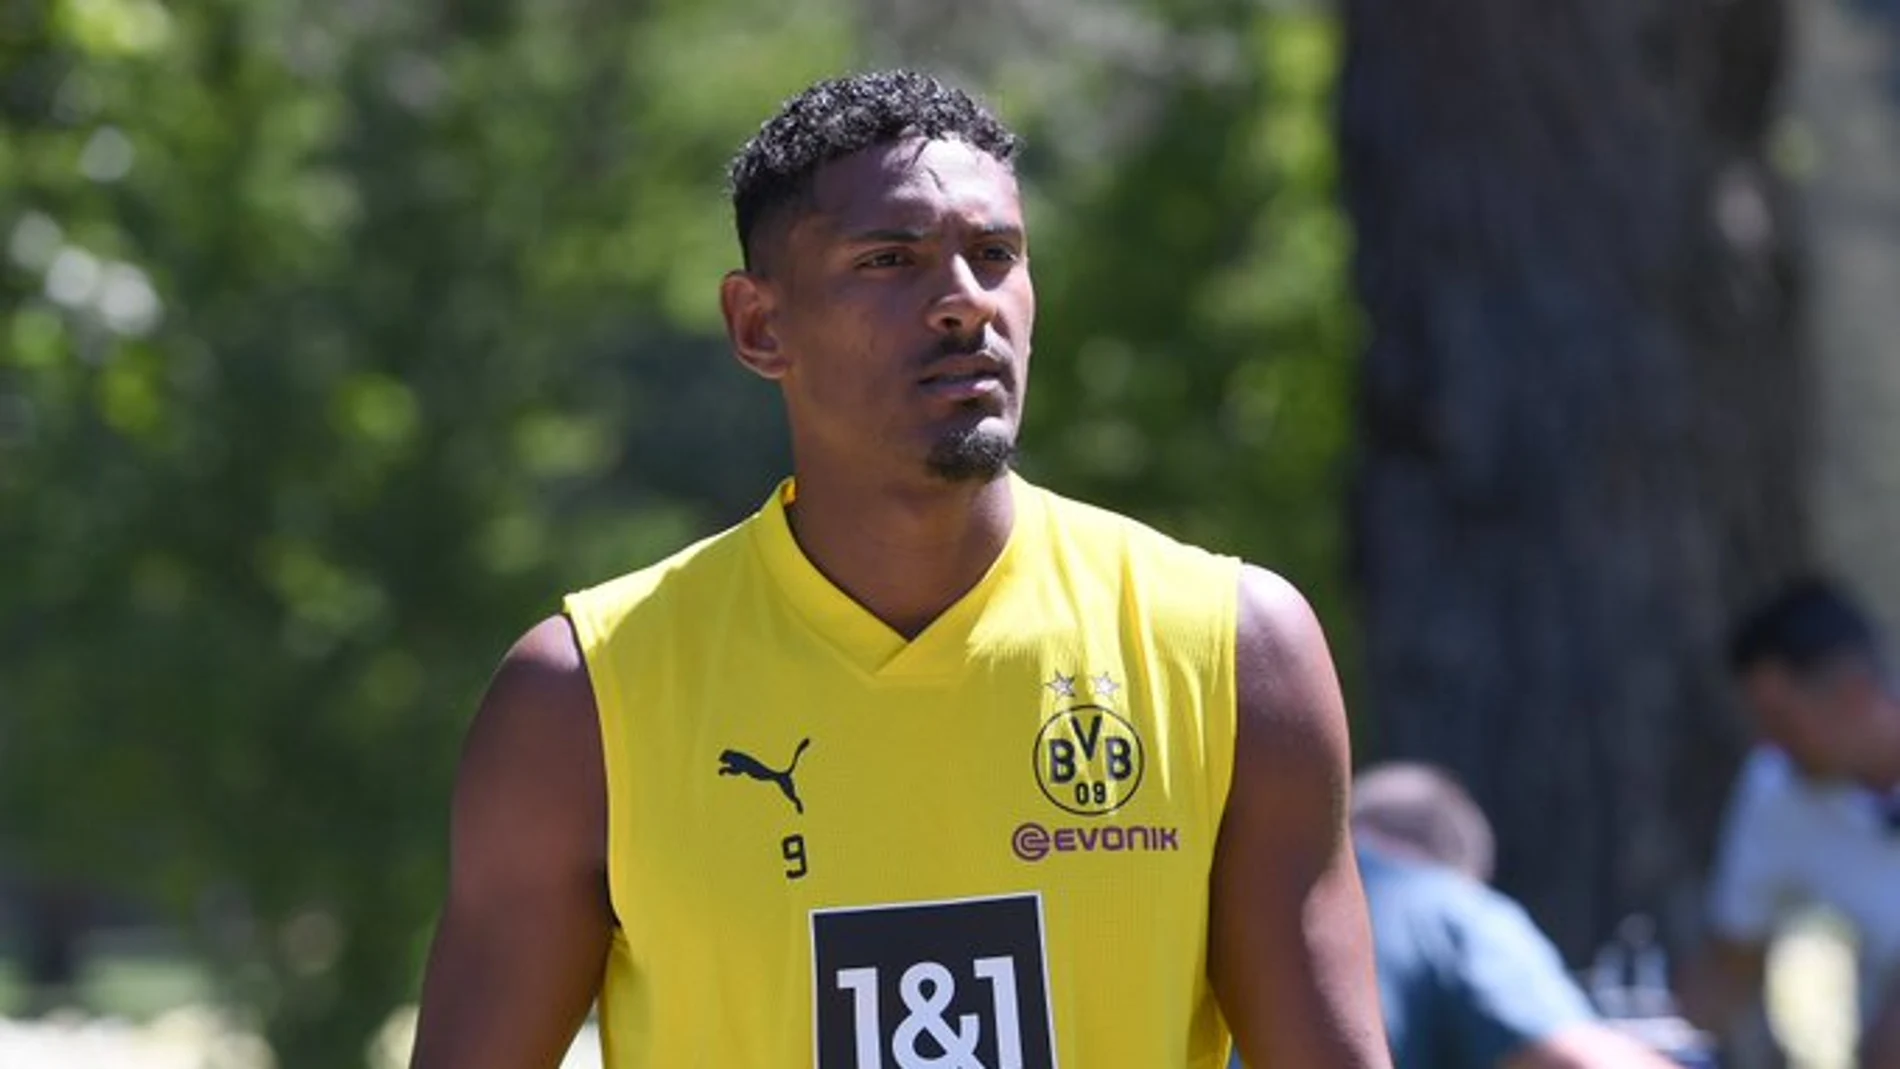 Se confirman los peores presagios en el Borussia Dortmund: el tumor testicular de Haller es maligno